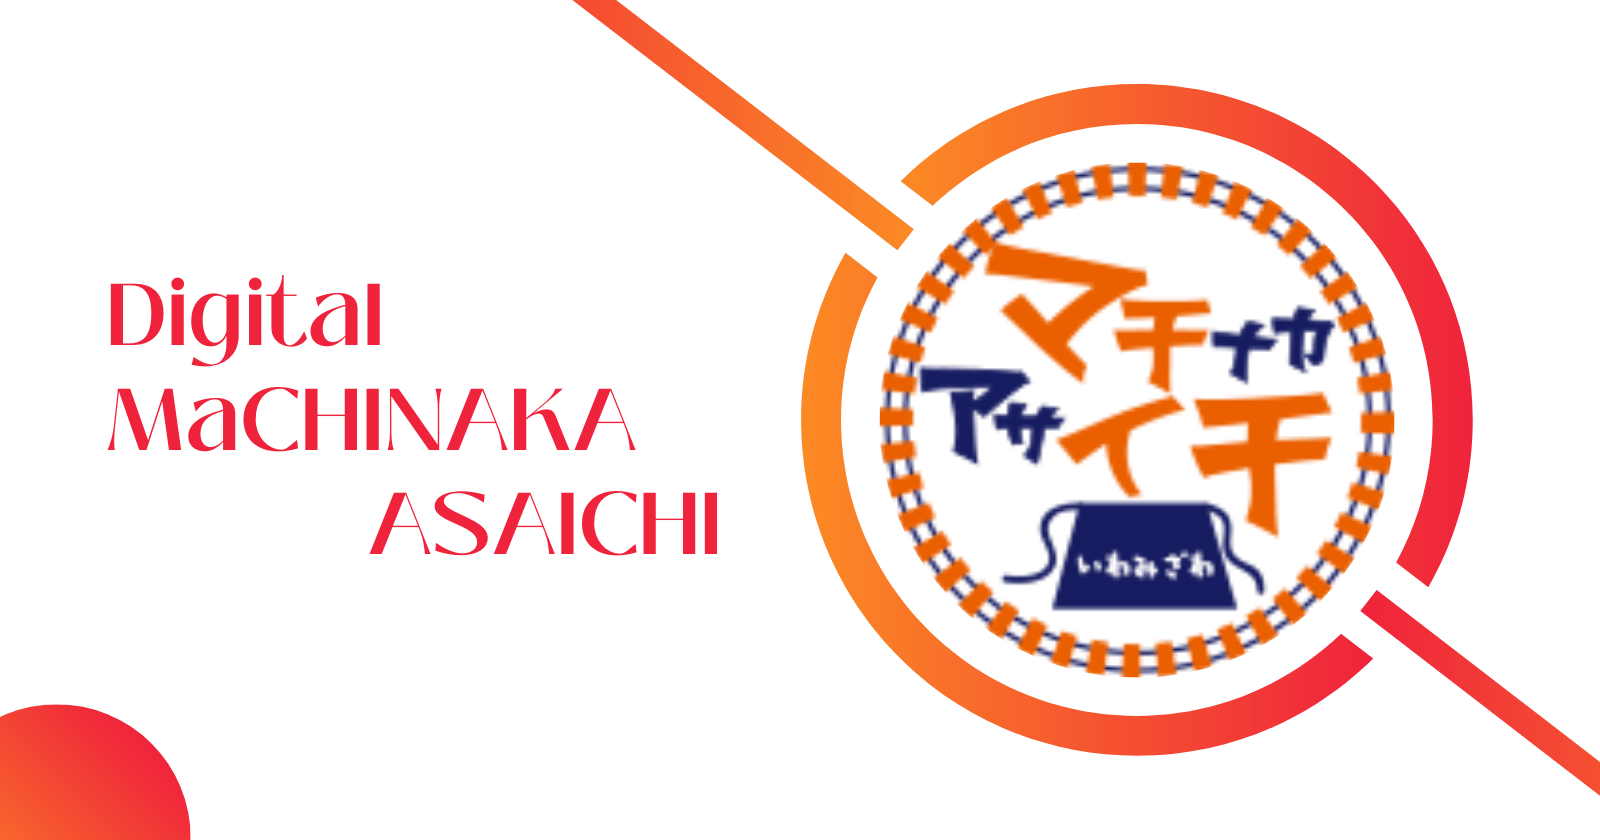 Digital-MaCHINAKA-ASAICHIの画像